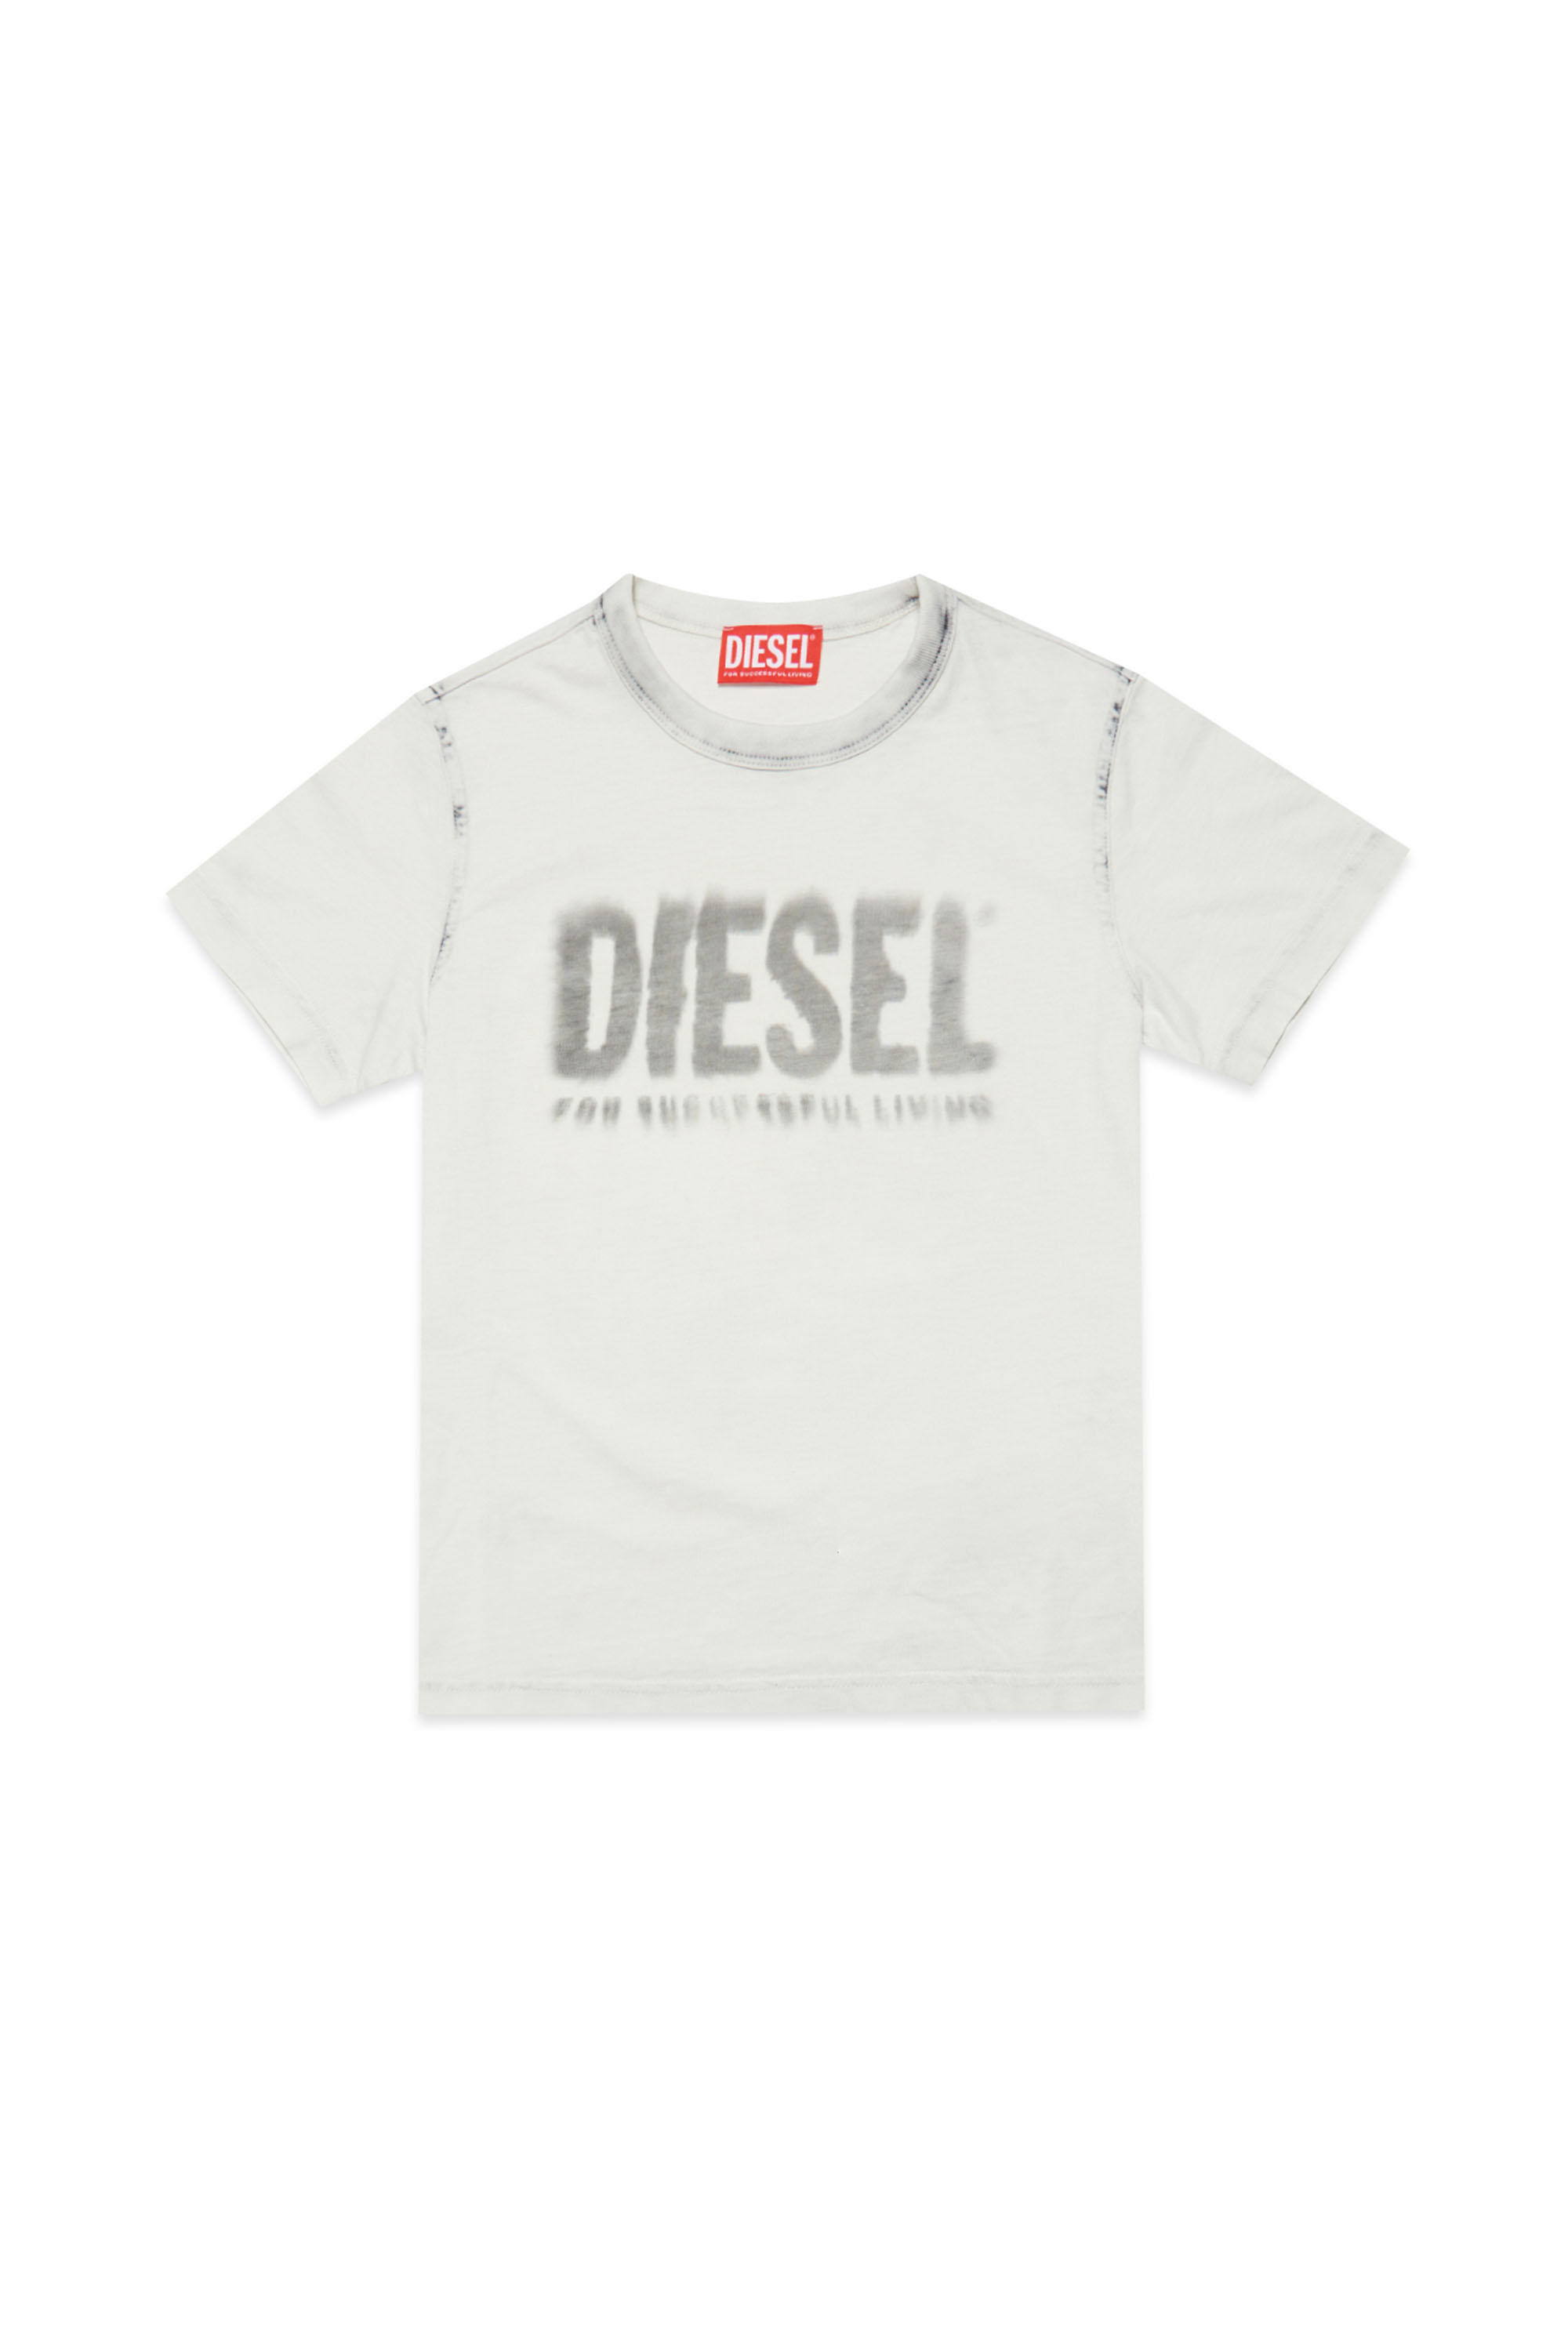 Diesel - TDIEGORE6, Weiss/Grau - Image 1